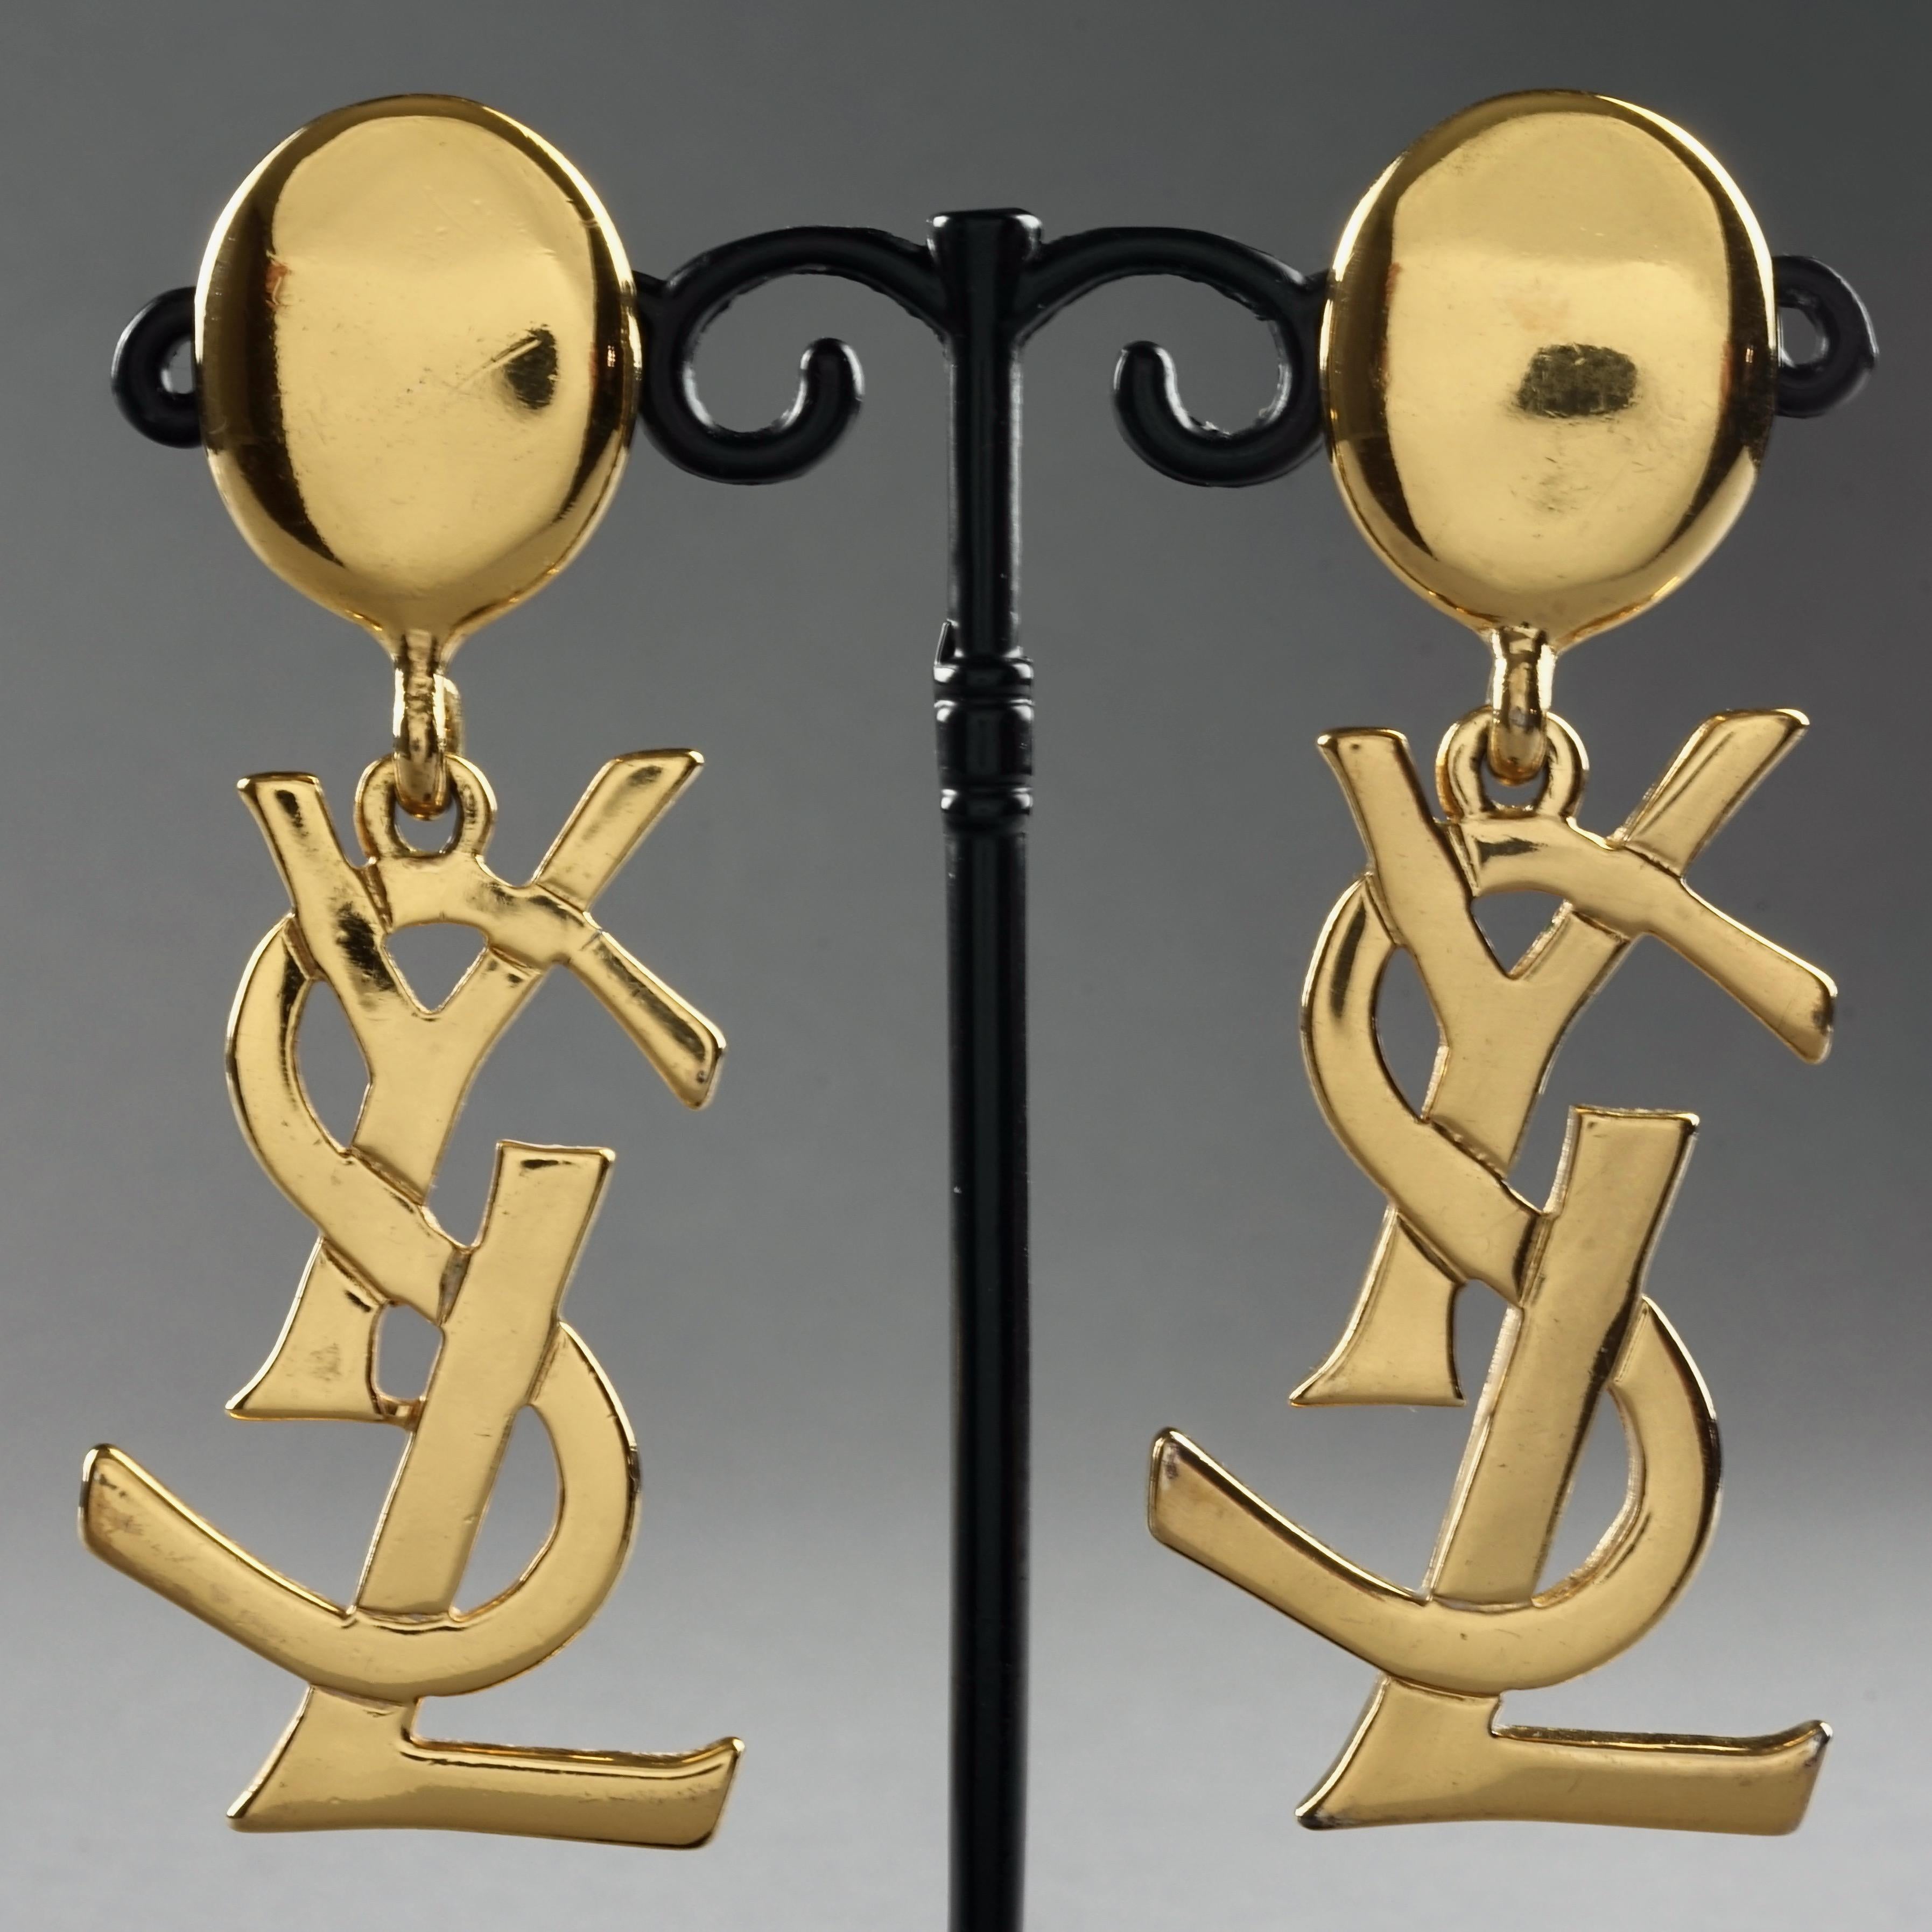 ysl logo earrings